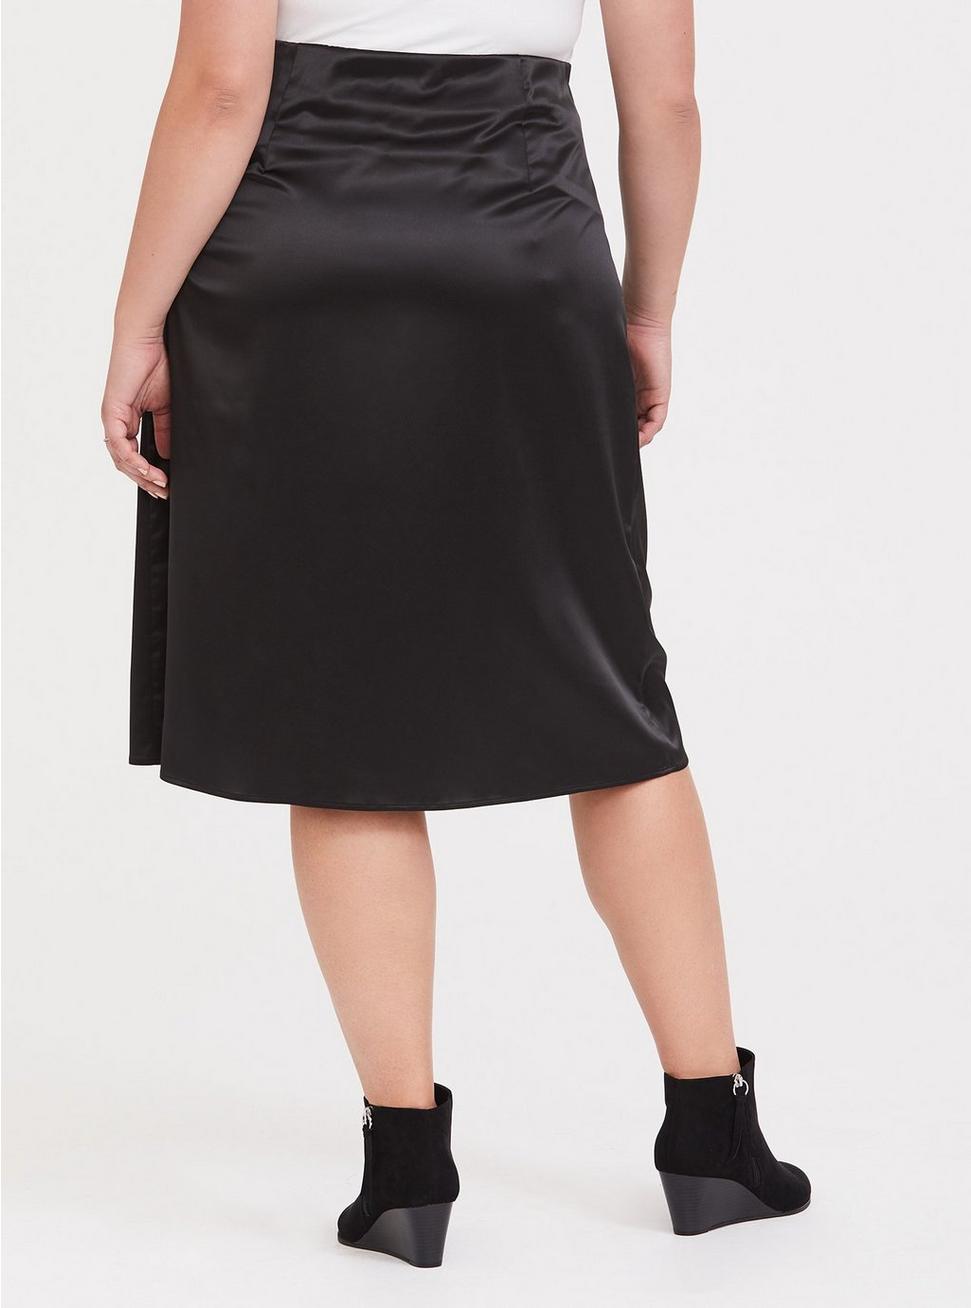 Black Satin Slip Skirt, DEEP BLACK, alternate